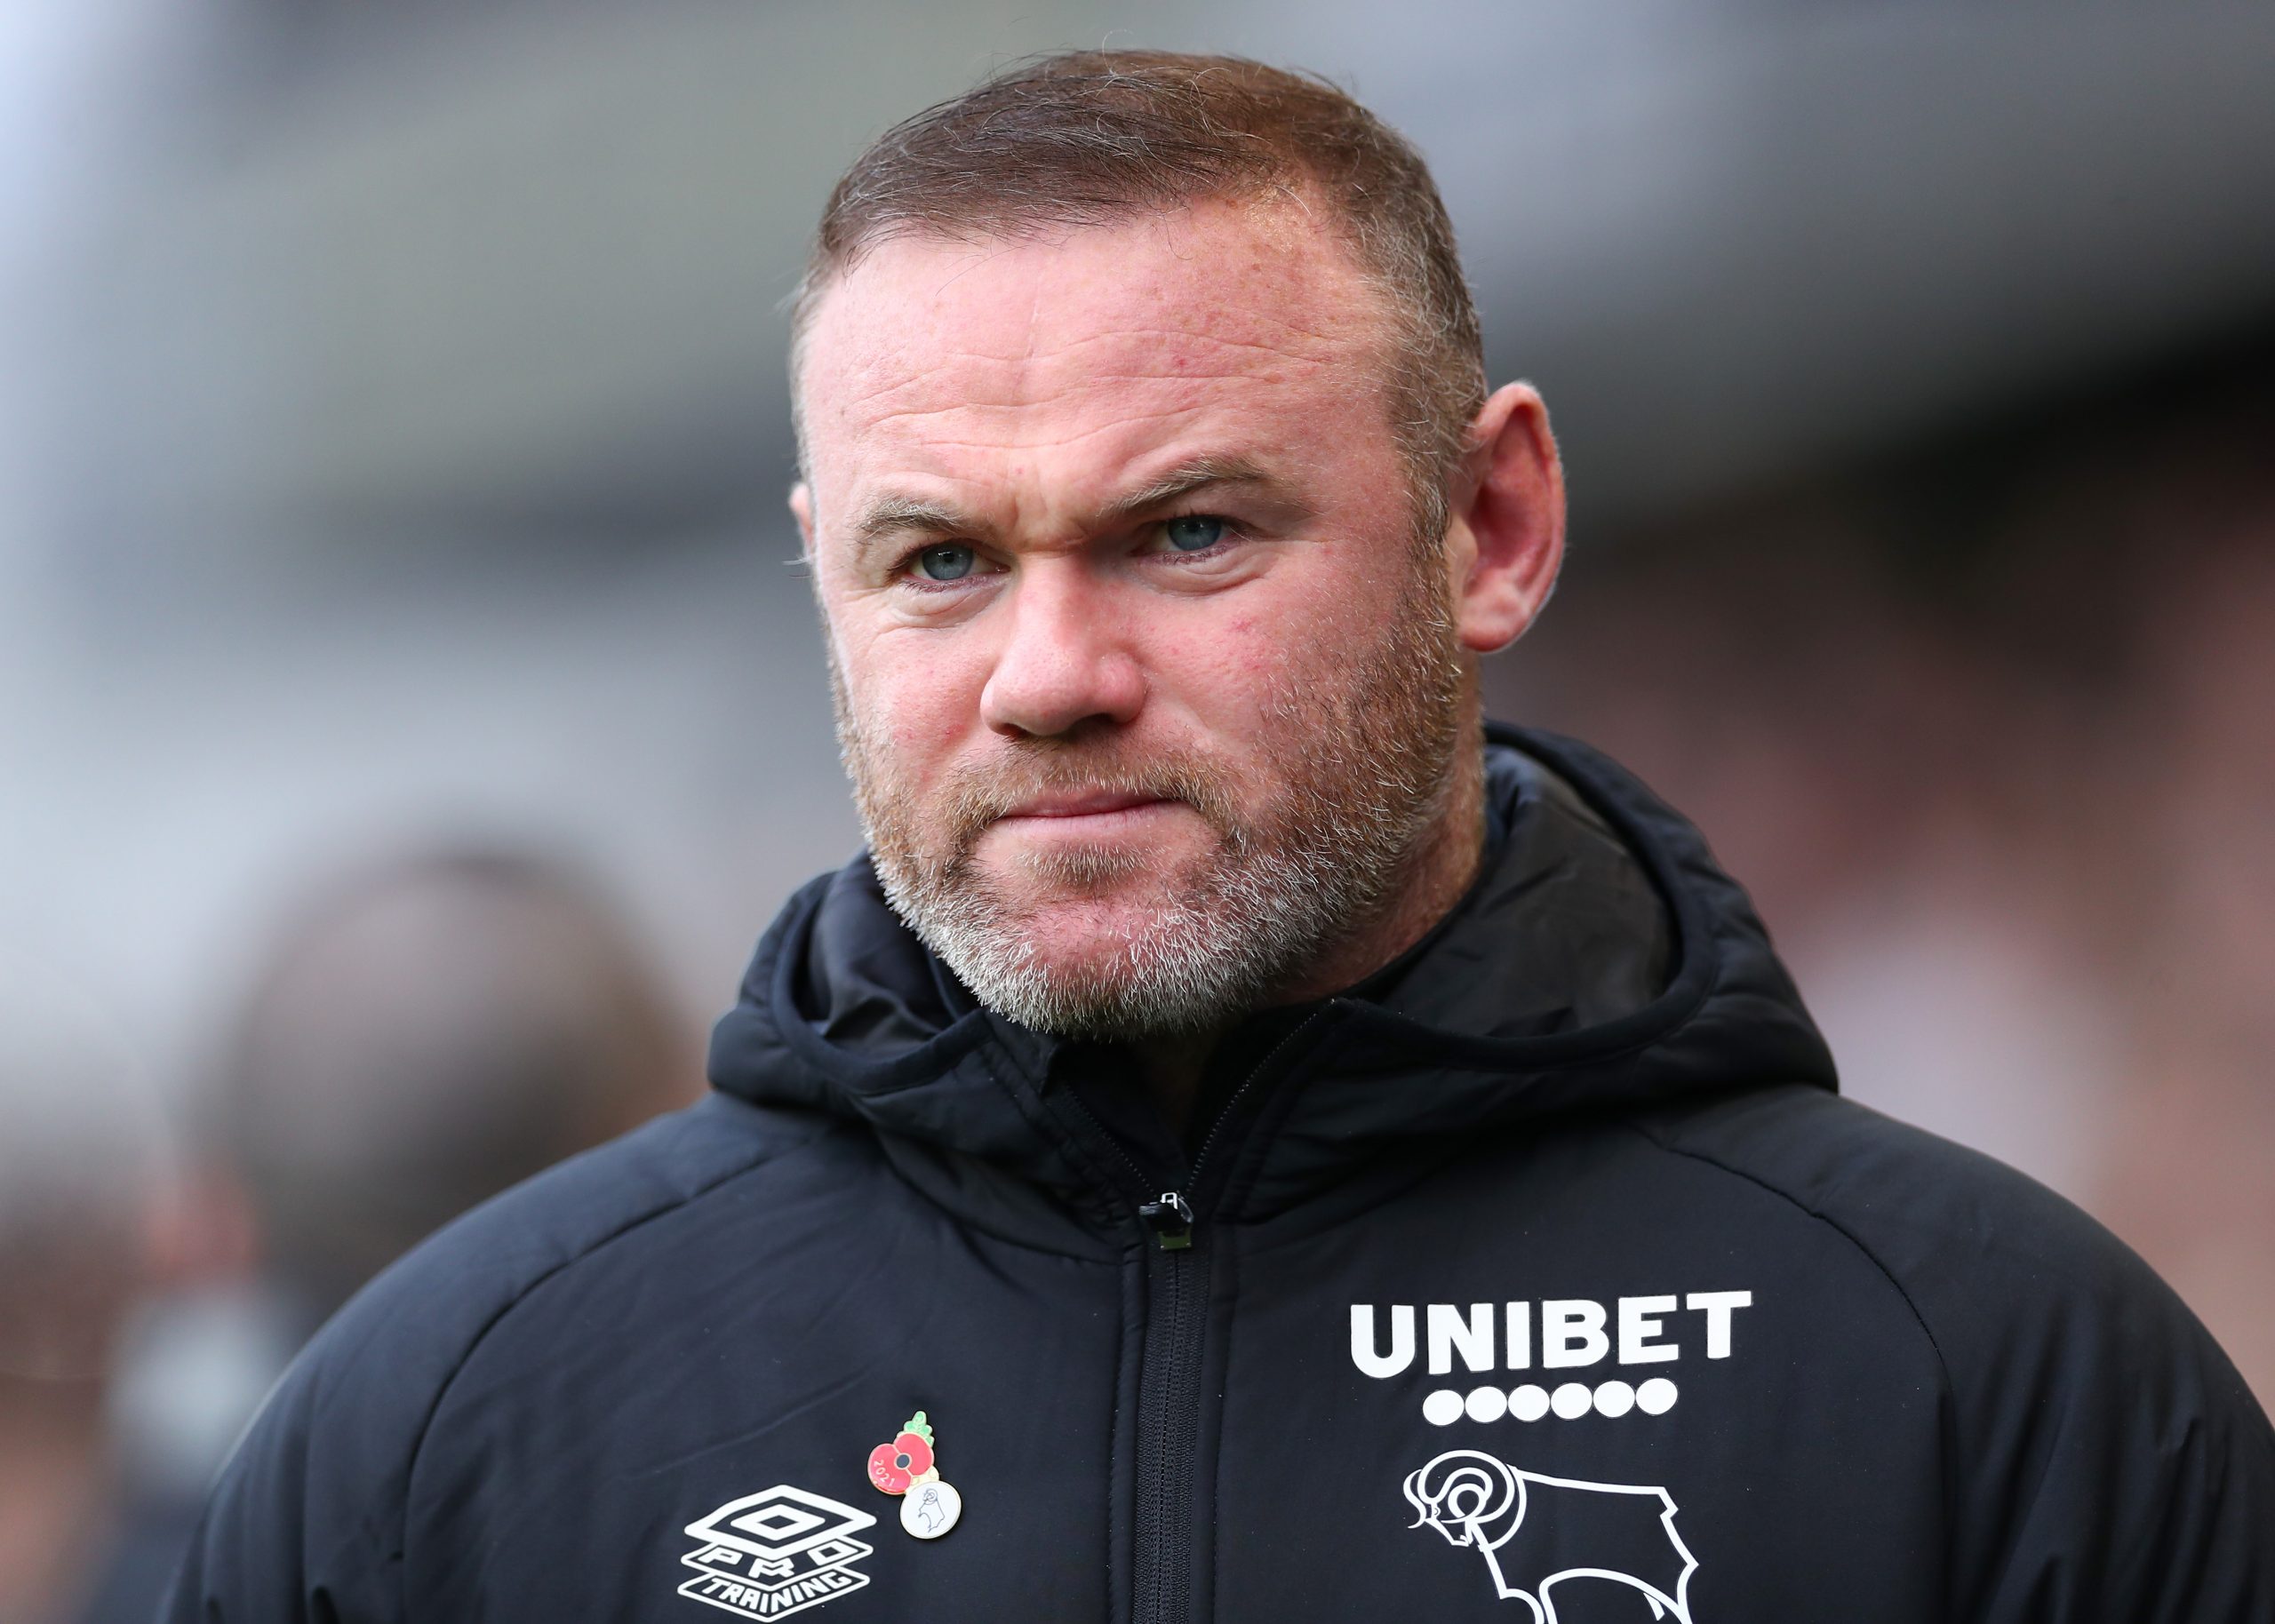 Rooney hiện đang cố gắng cứu "con tàu đắm" Derby County